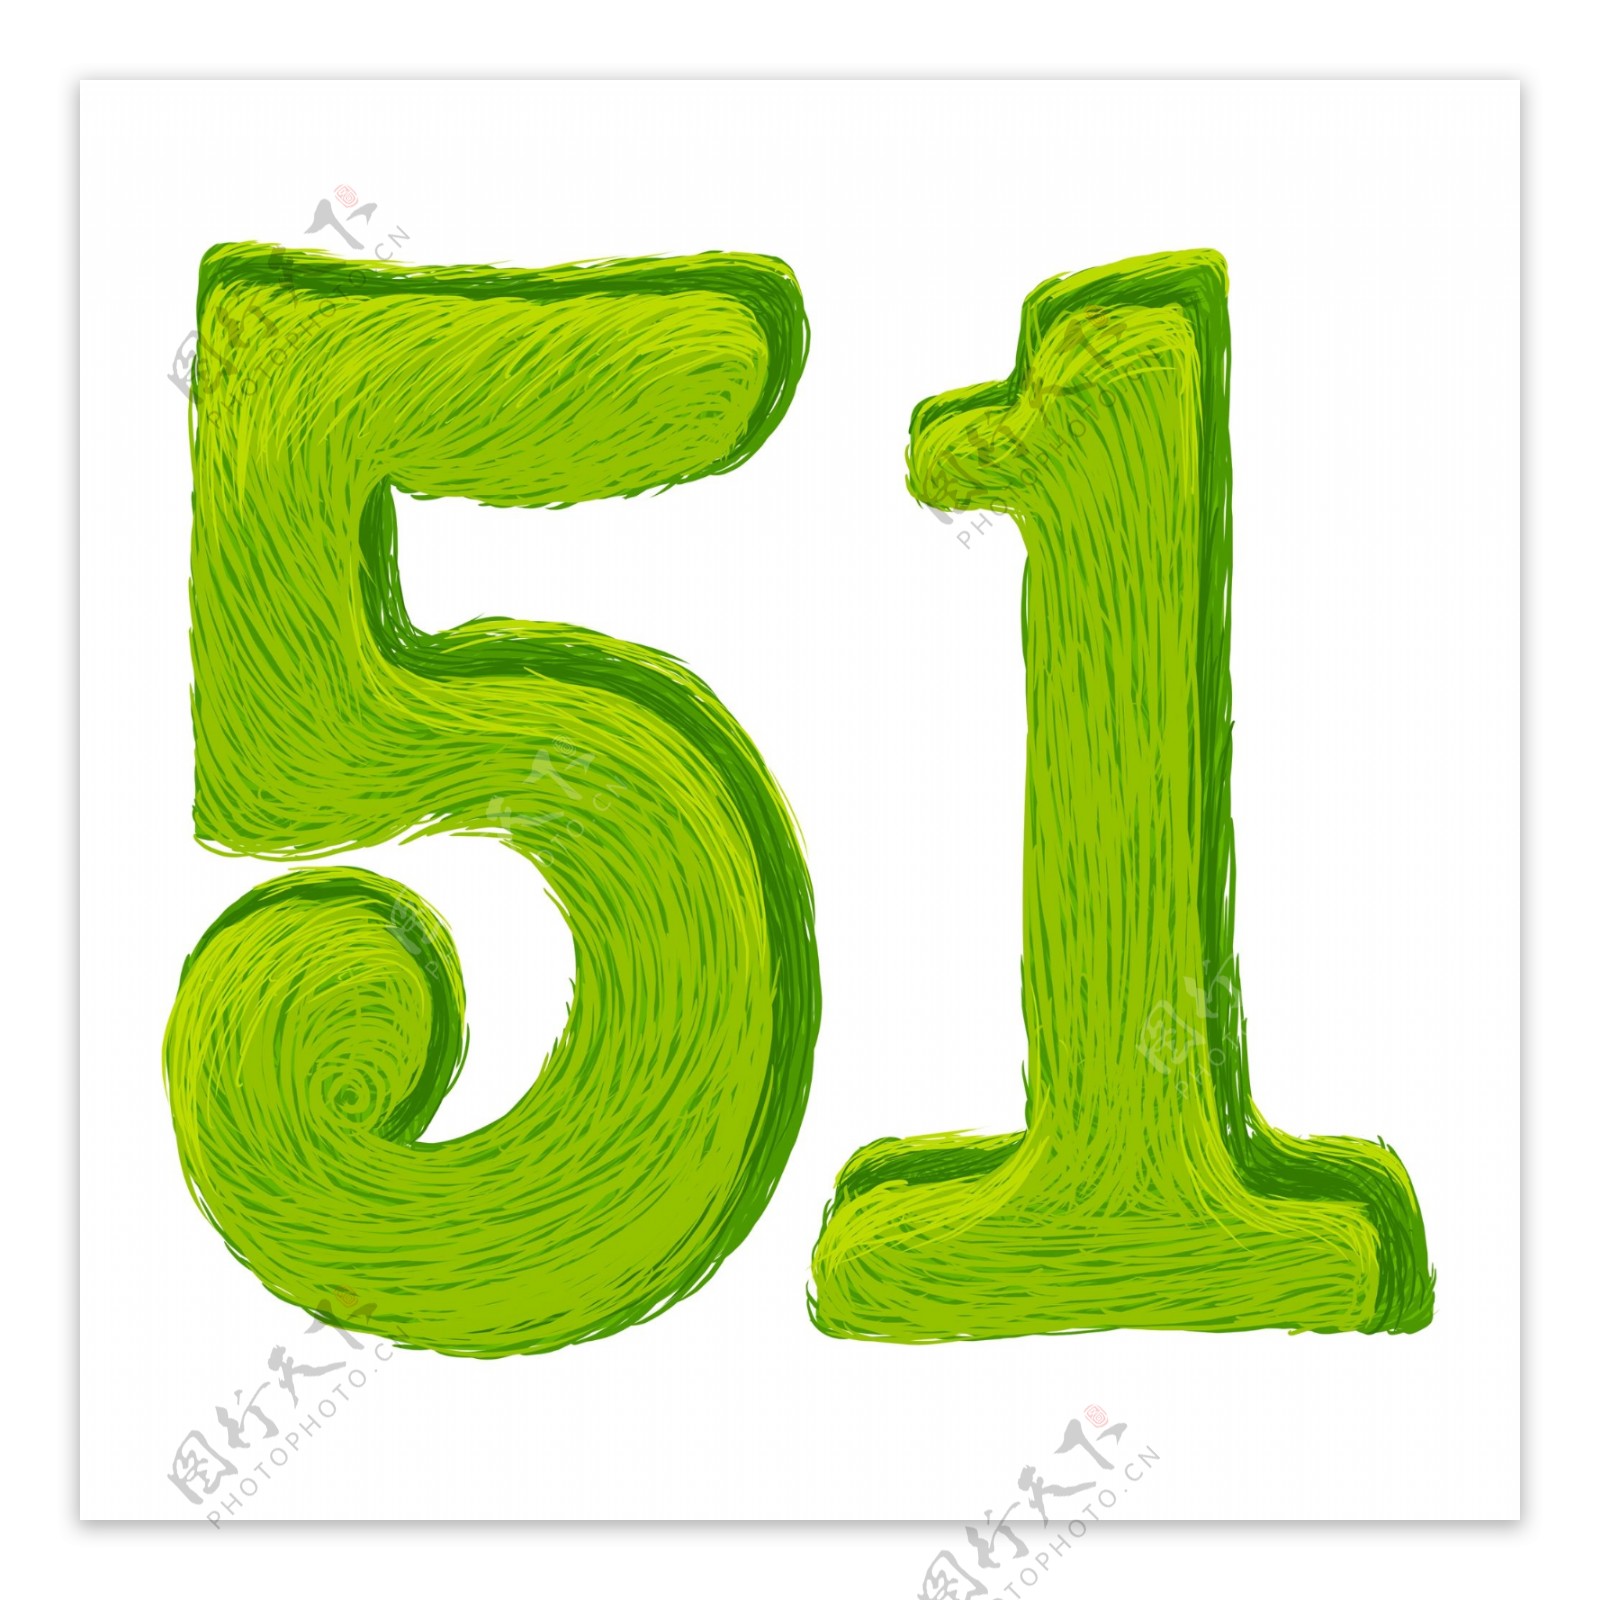 绿色五一艺术字素材